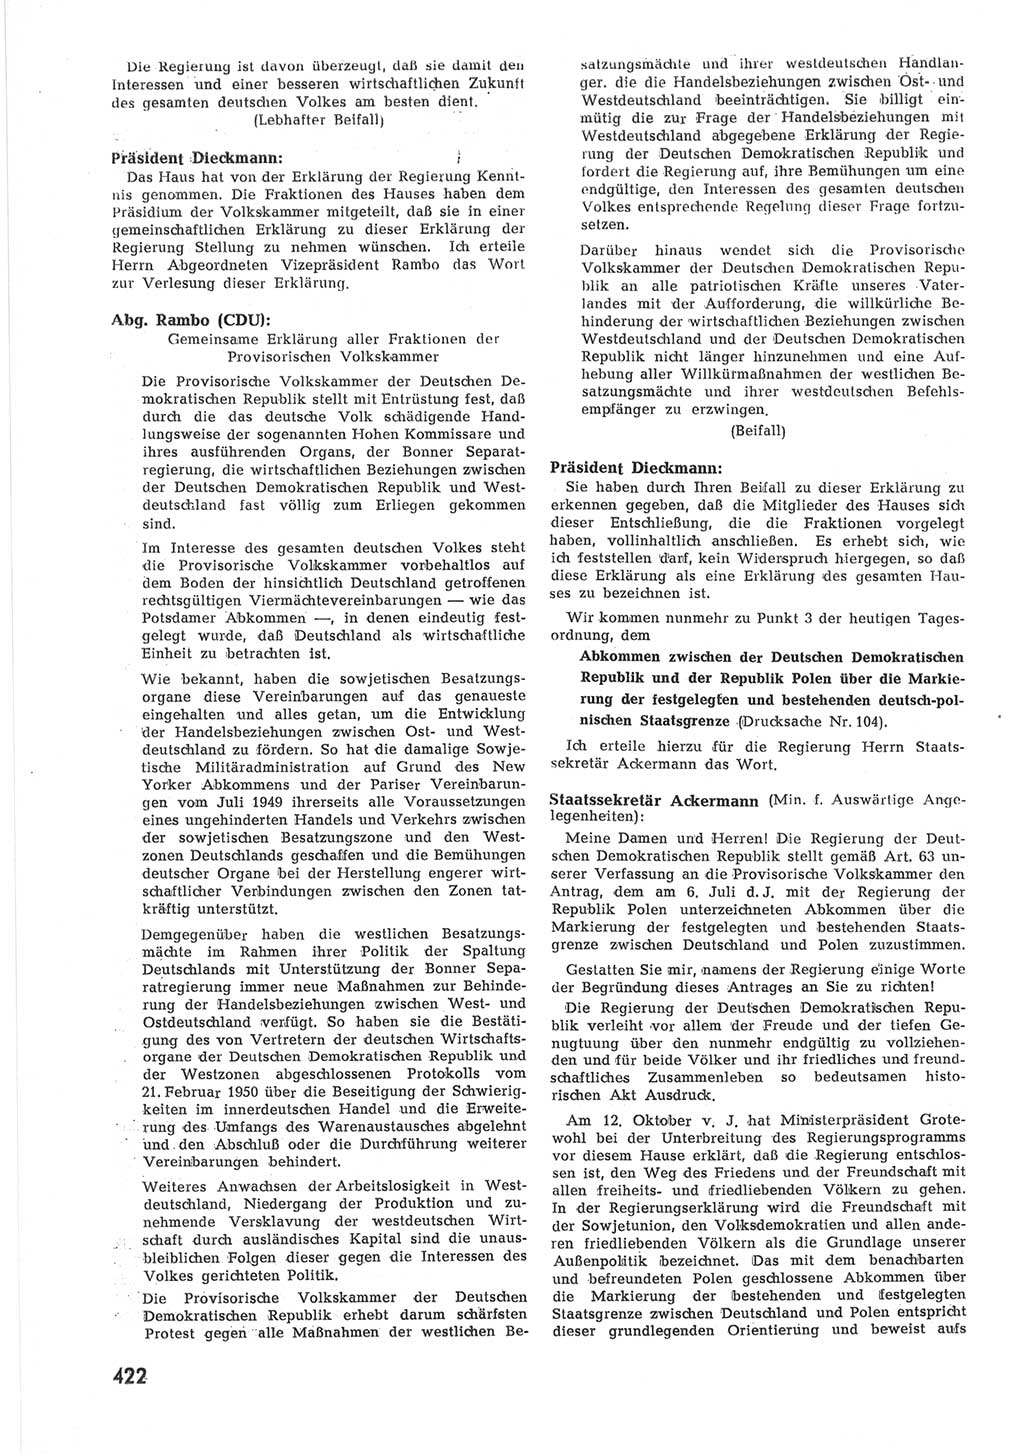 Provisorische Volkskammer (VK) der Deutschen Demokratischen Republik (DDR) 1949-1950, Dokument 440 (Prov. VK DDR 1949-1950, Dok. 440)